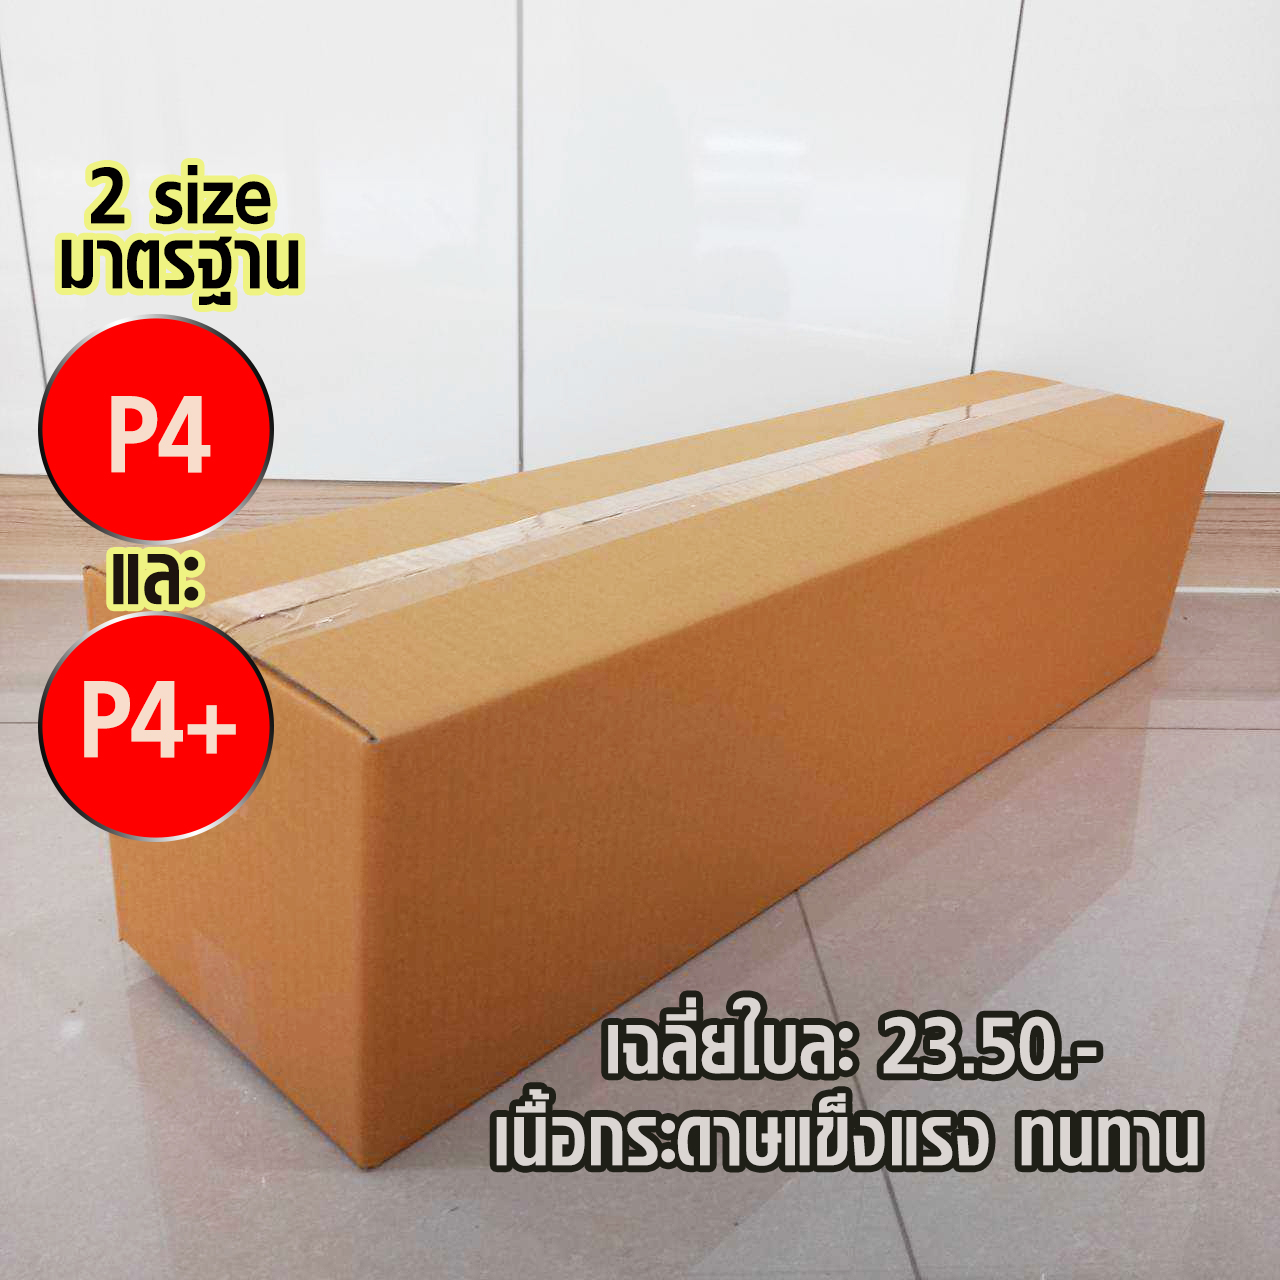 กล่องพัสดุฝาชน เบอร์ P4 กล่อง กล่องไปรษณีย์  ขนาด (30x100x20 cm.) กล่องพัสดุ